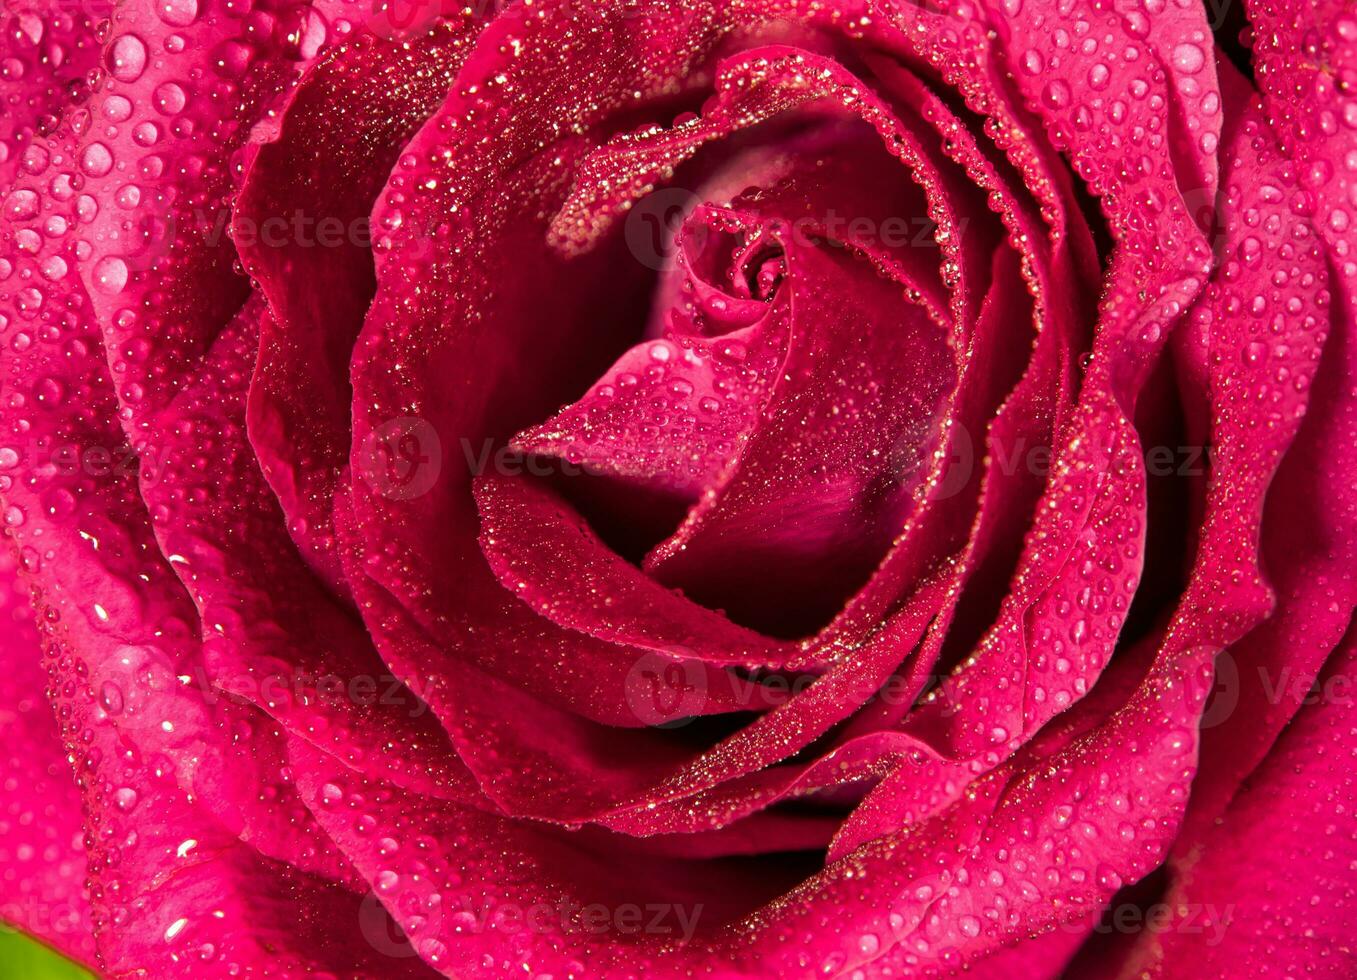 couleur douce de rose rose, fond floral naturel de couleur romance photo